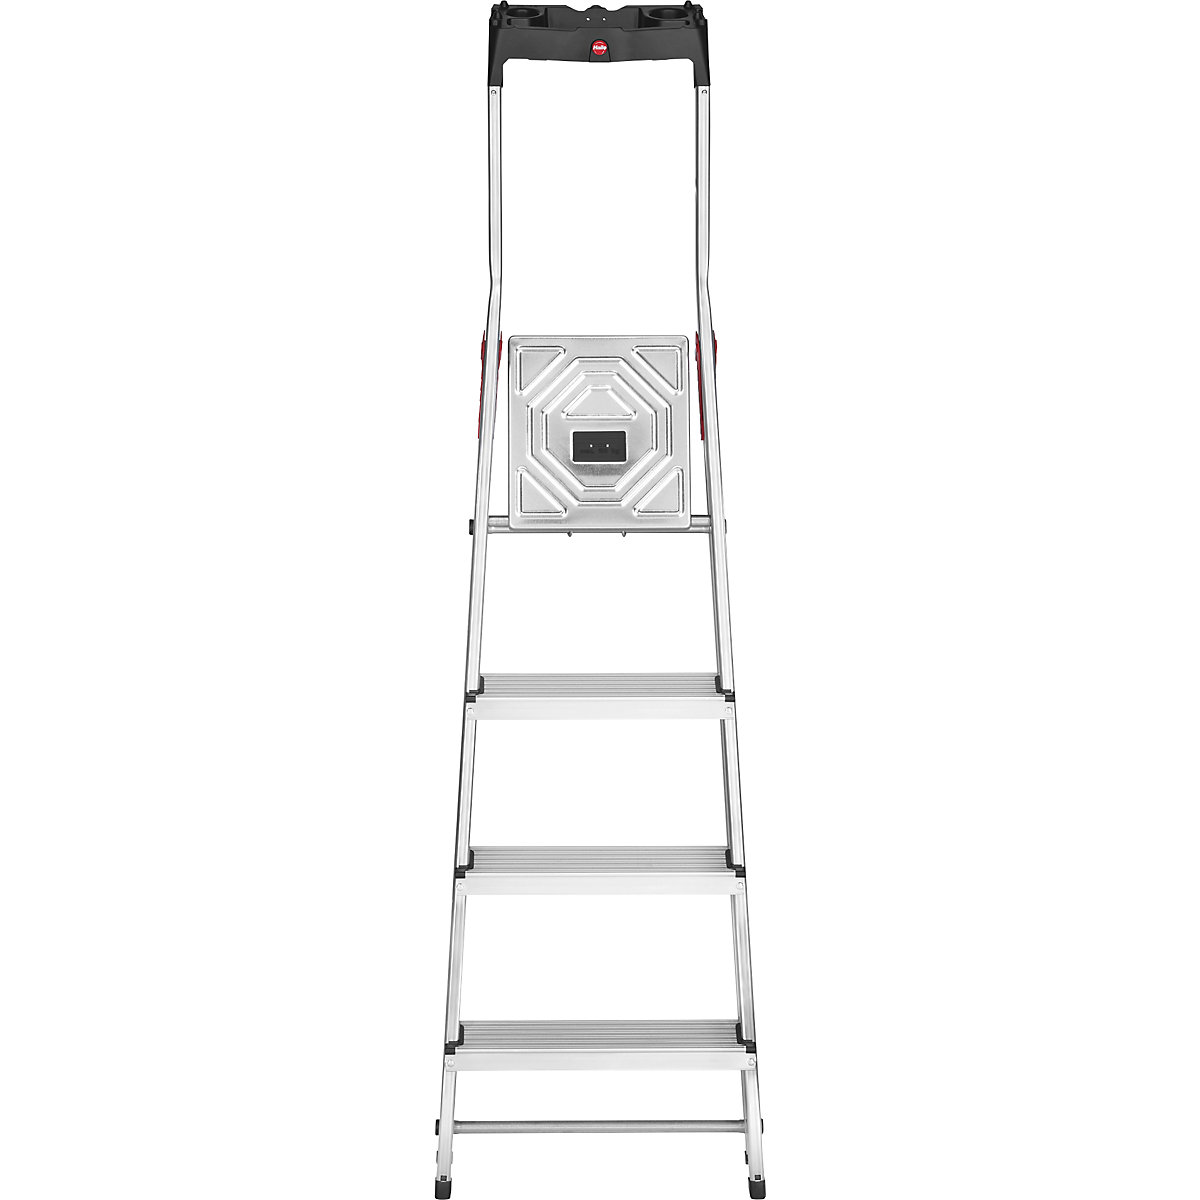 Aluminijasta dvokraka lestev s stopnicami StandardLine L60 – Hailo (Slika izdelka 18)